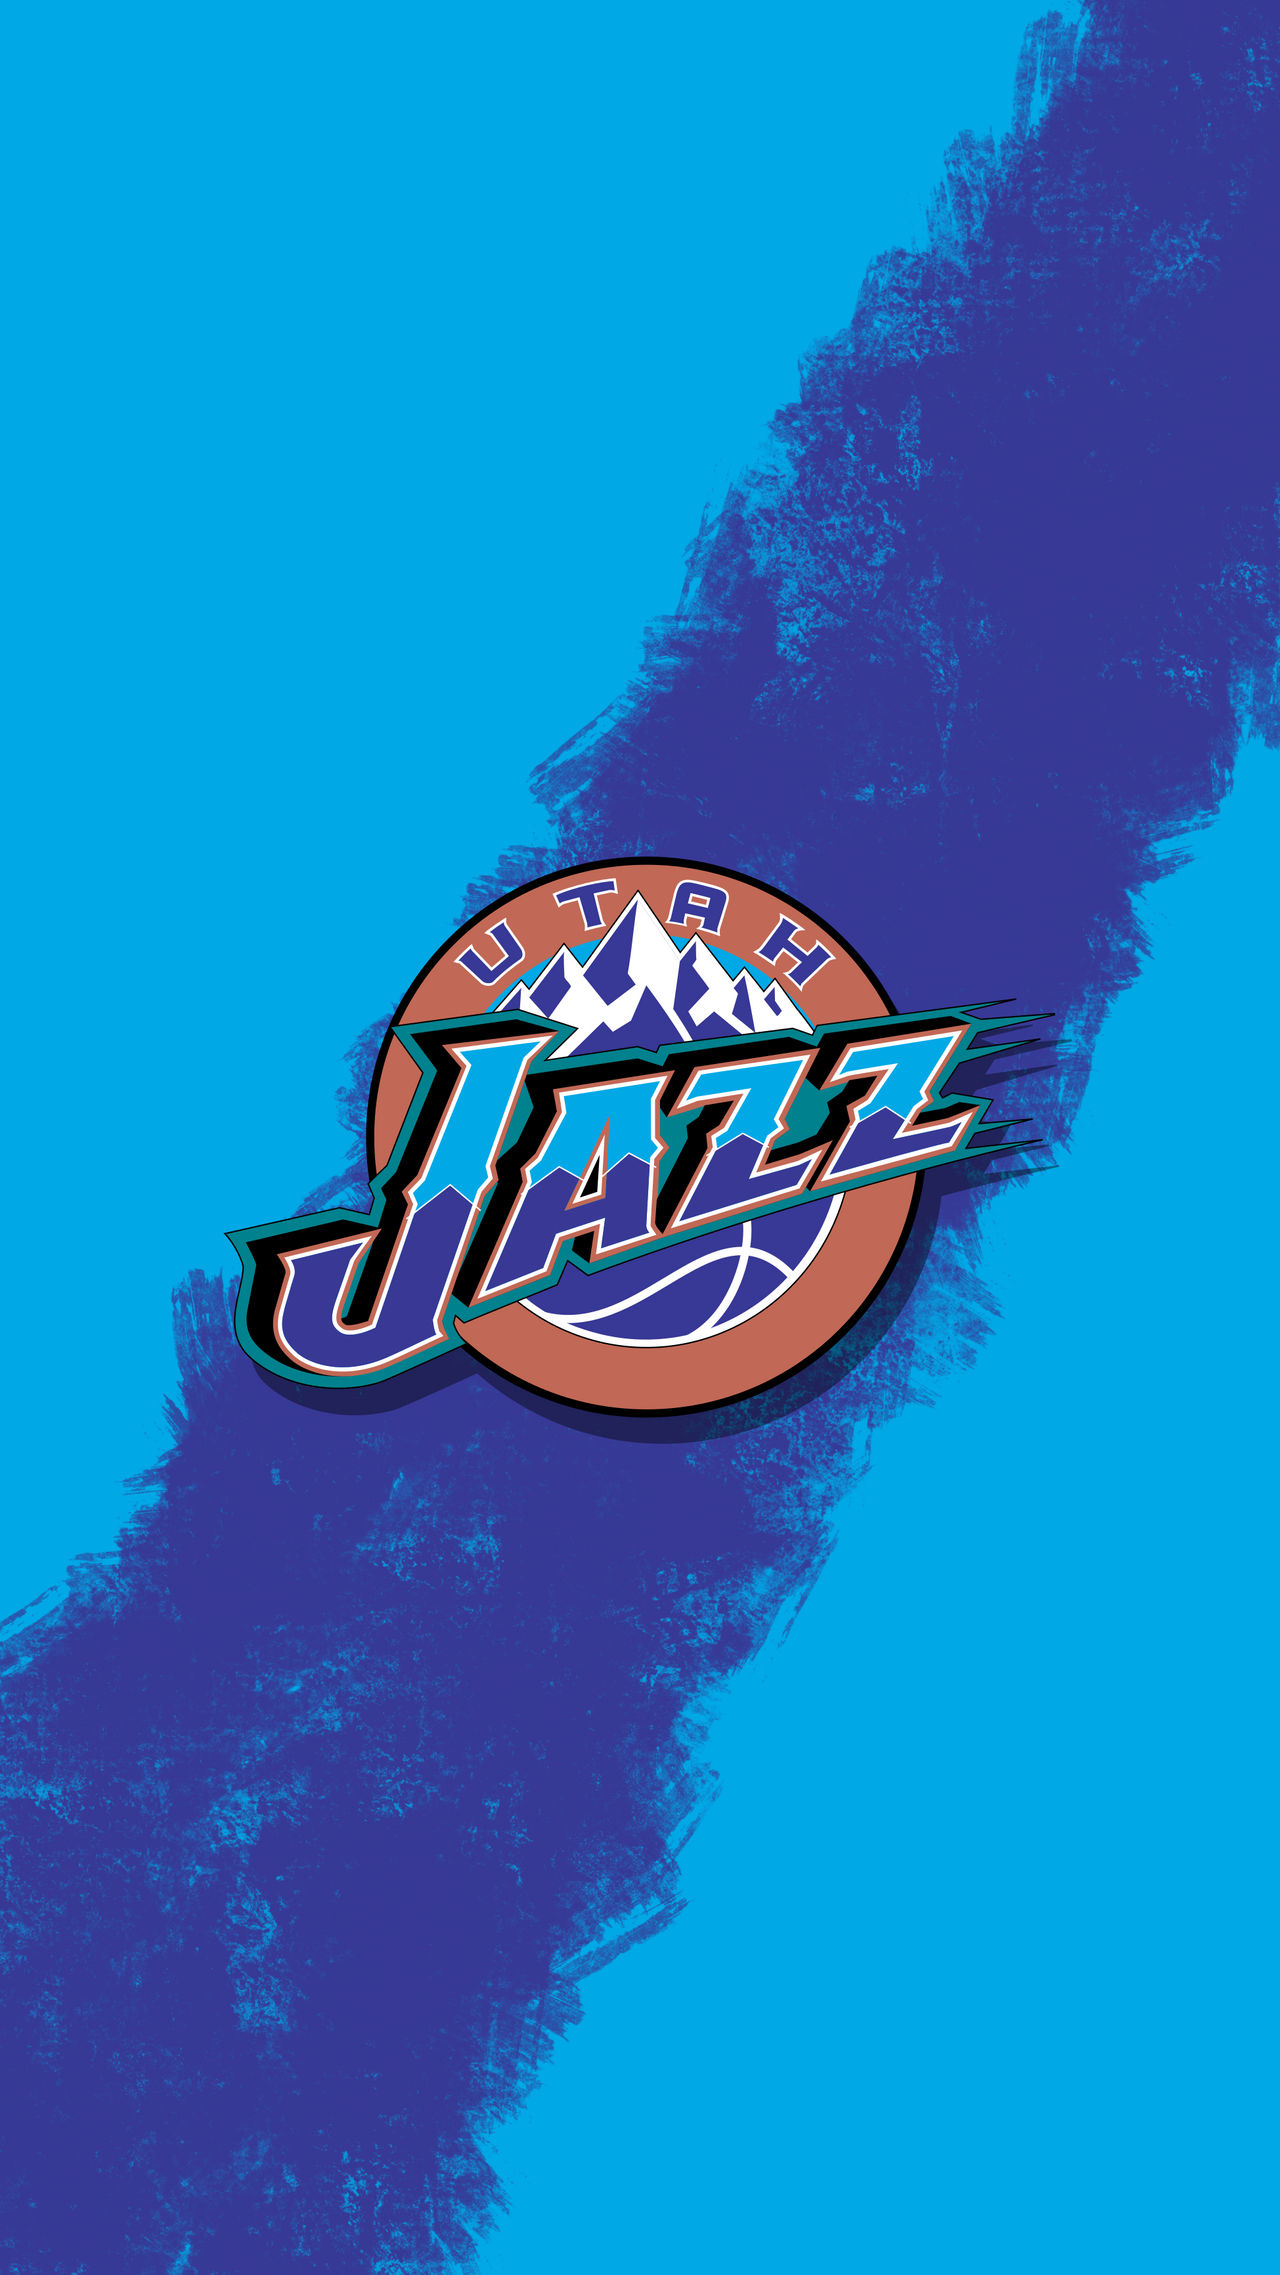 Utah Jazz Wallpaper - Utah Jazz